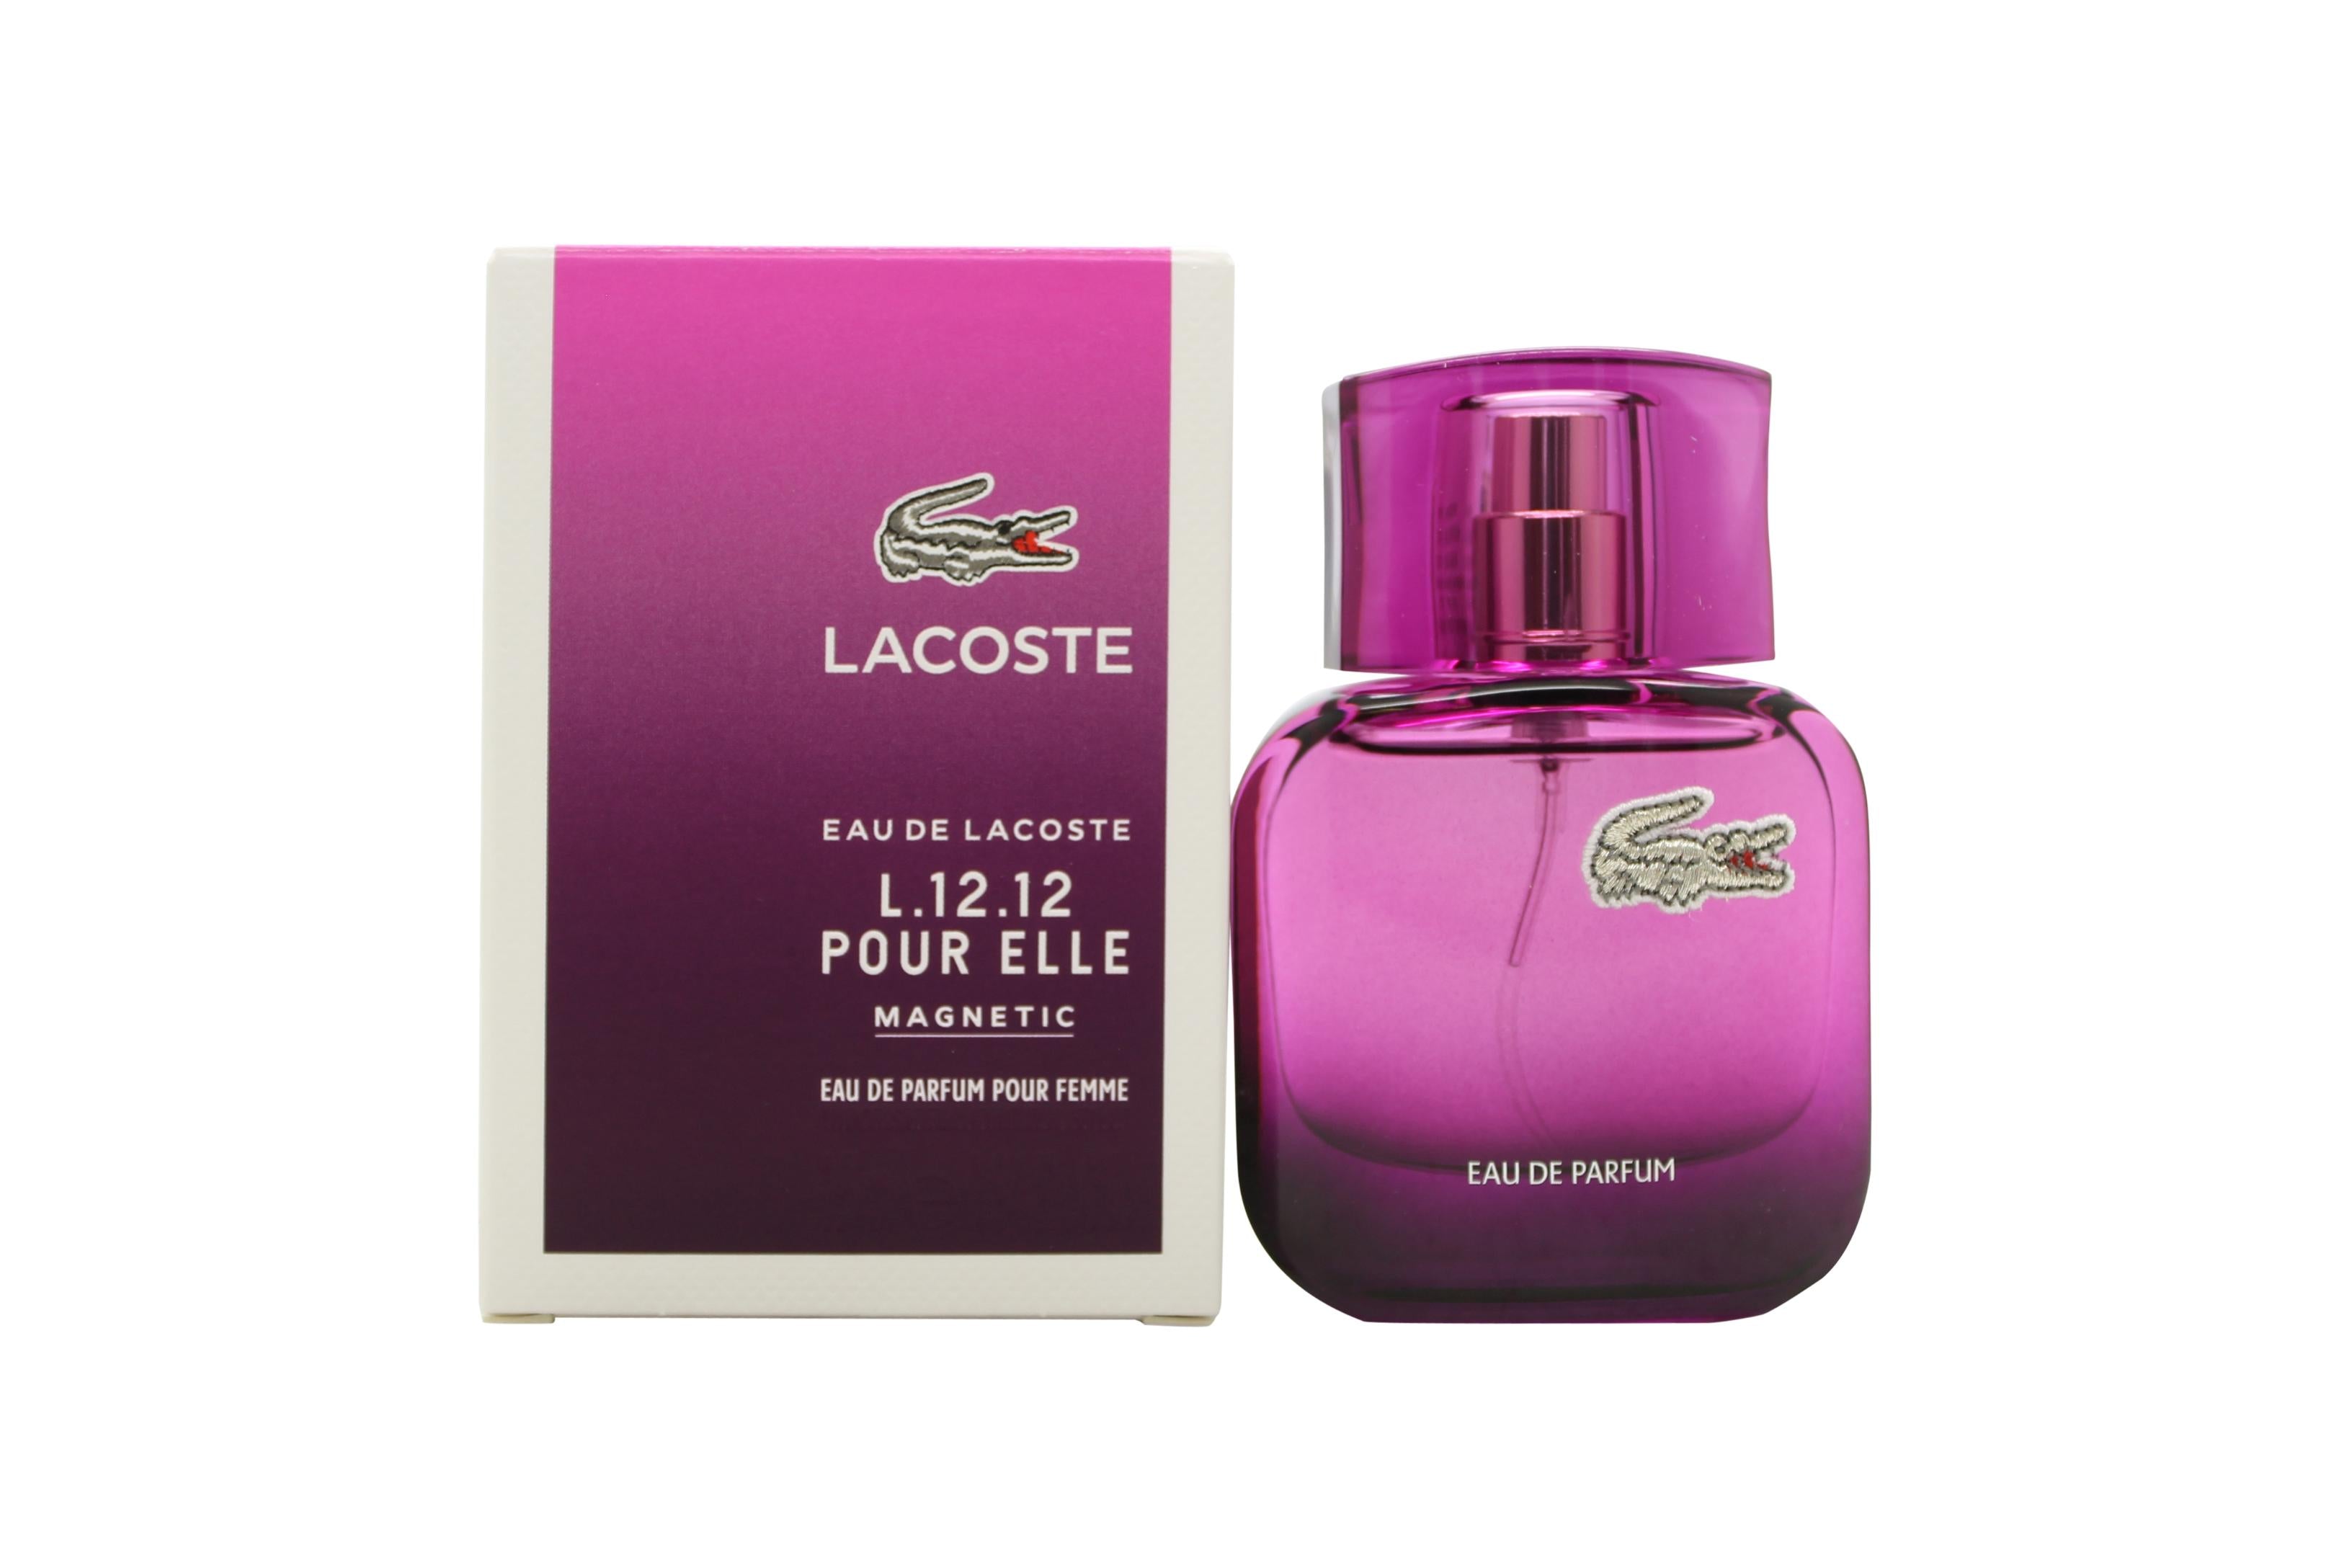 View Lacoste Eau de Lacoste L1212 Pour Elle Magnetic Eau de Parfum 25ml Spray information